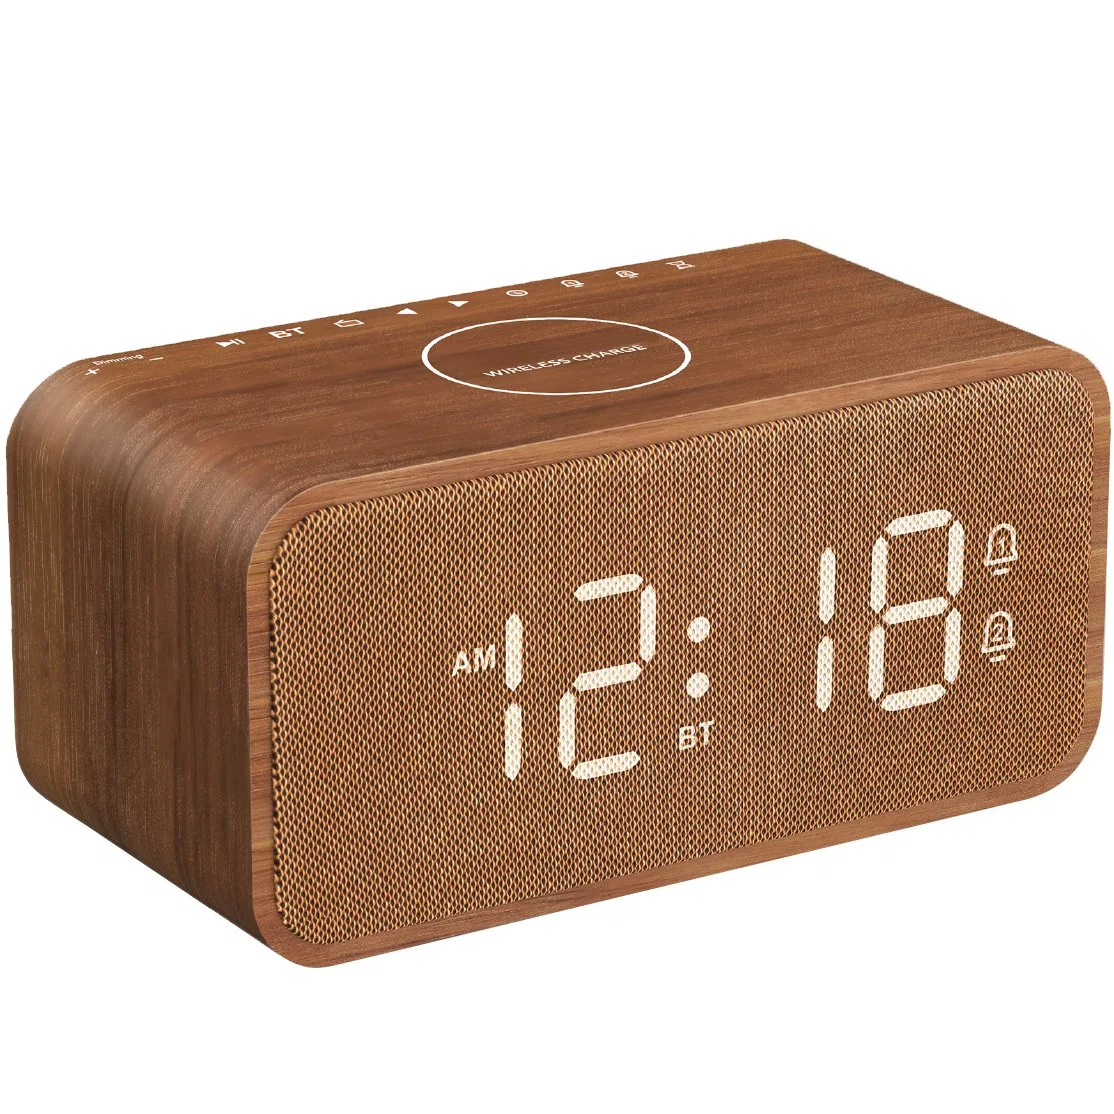 10W de carga USB inalámbrico de la radio digital FM de la alarma del reloj de madera compatibles con Bluetooth